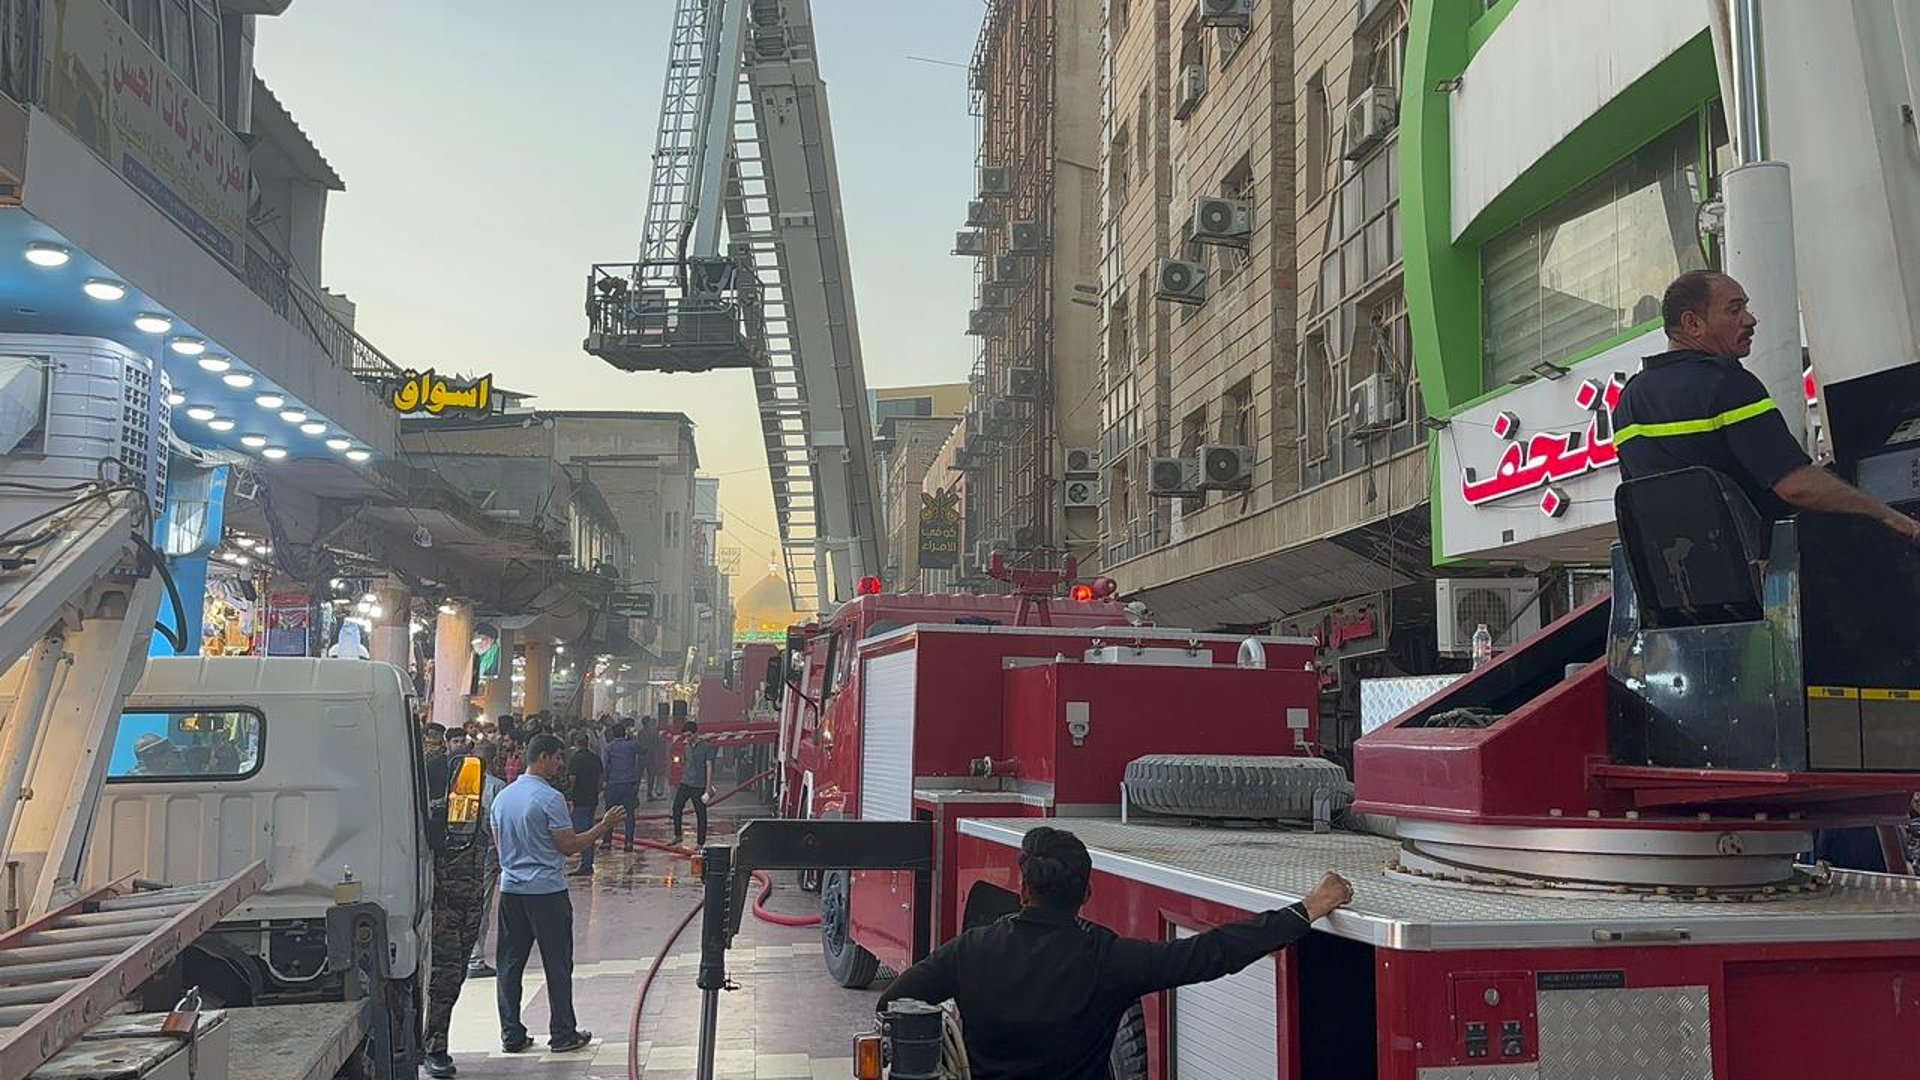 صور من النجف: حريق في شارع الرسول المؤدي لمرقد الإمام علي